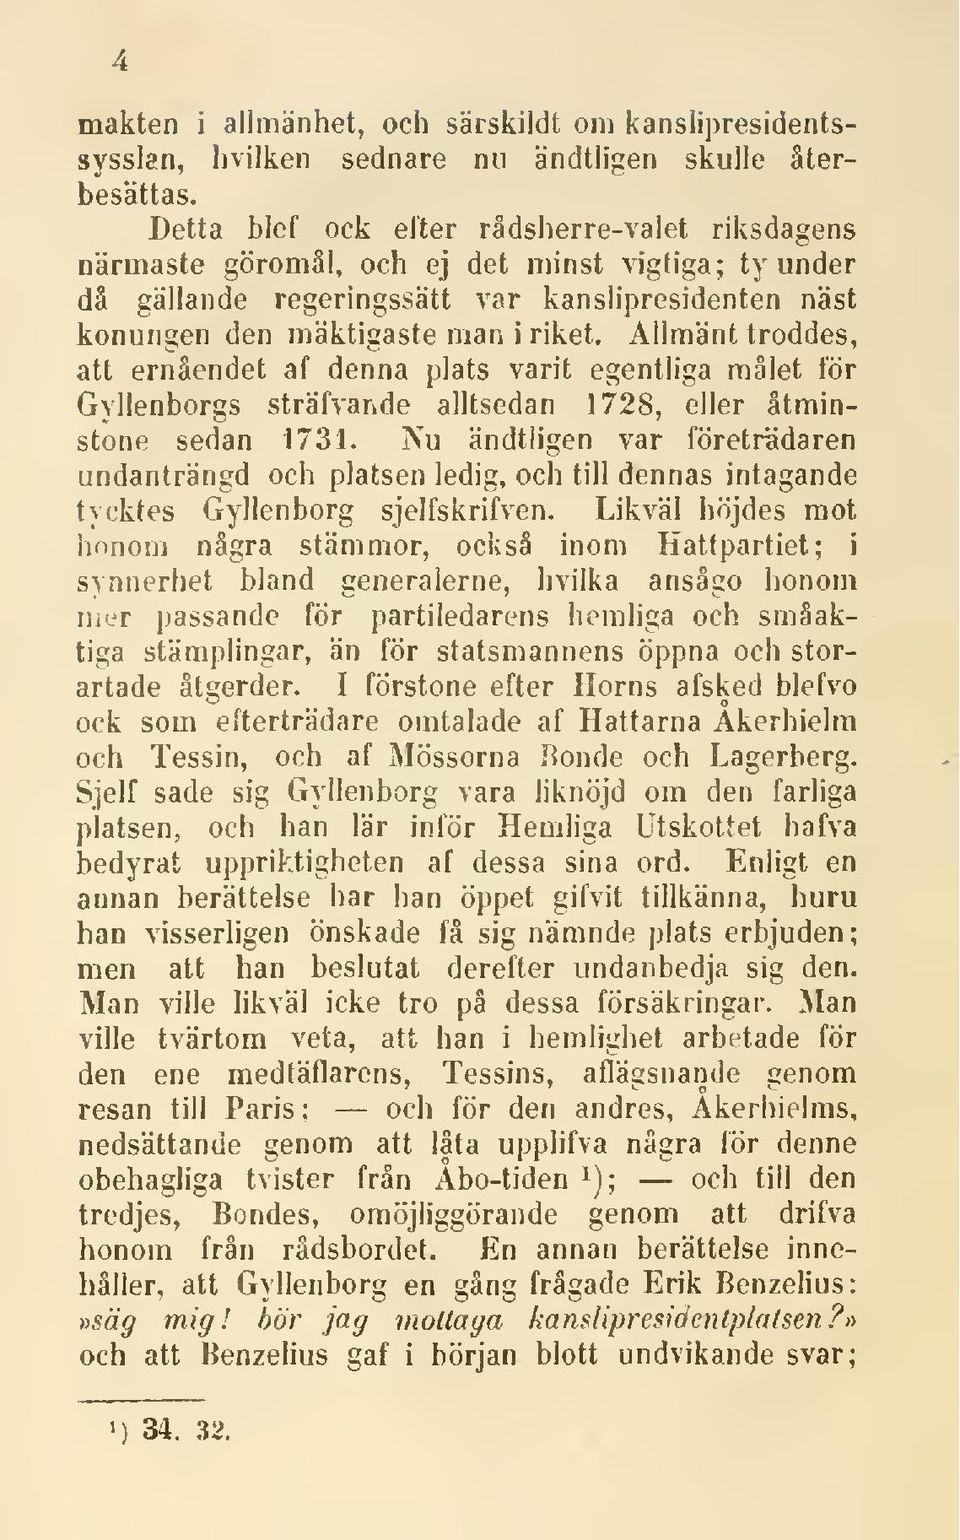 Allmänt troddes, att ernåendet af denna plats varit egentliga målet för Gyllenborgs sträfvande alltsedan 1728, eller åtminstone sedan 1731.